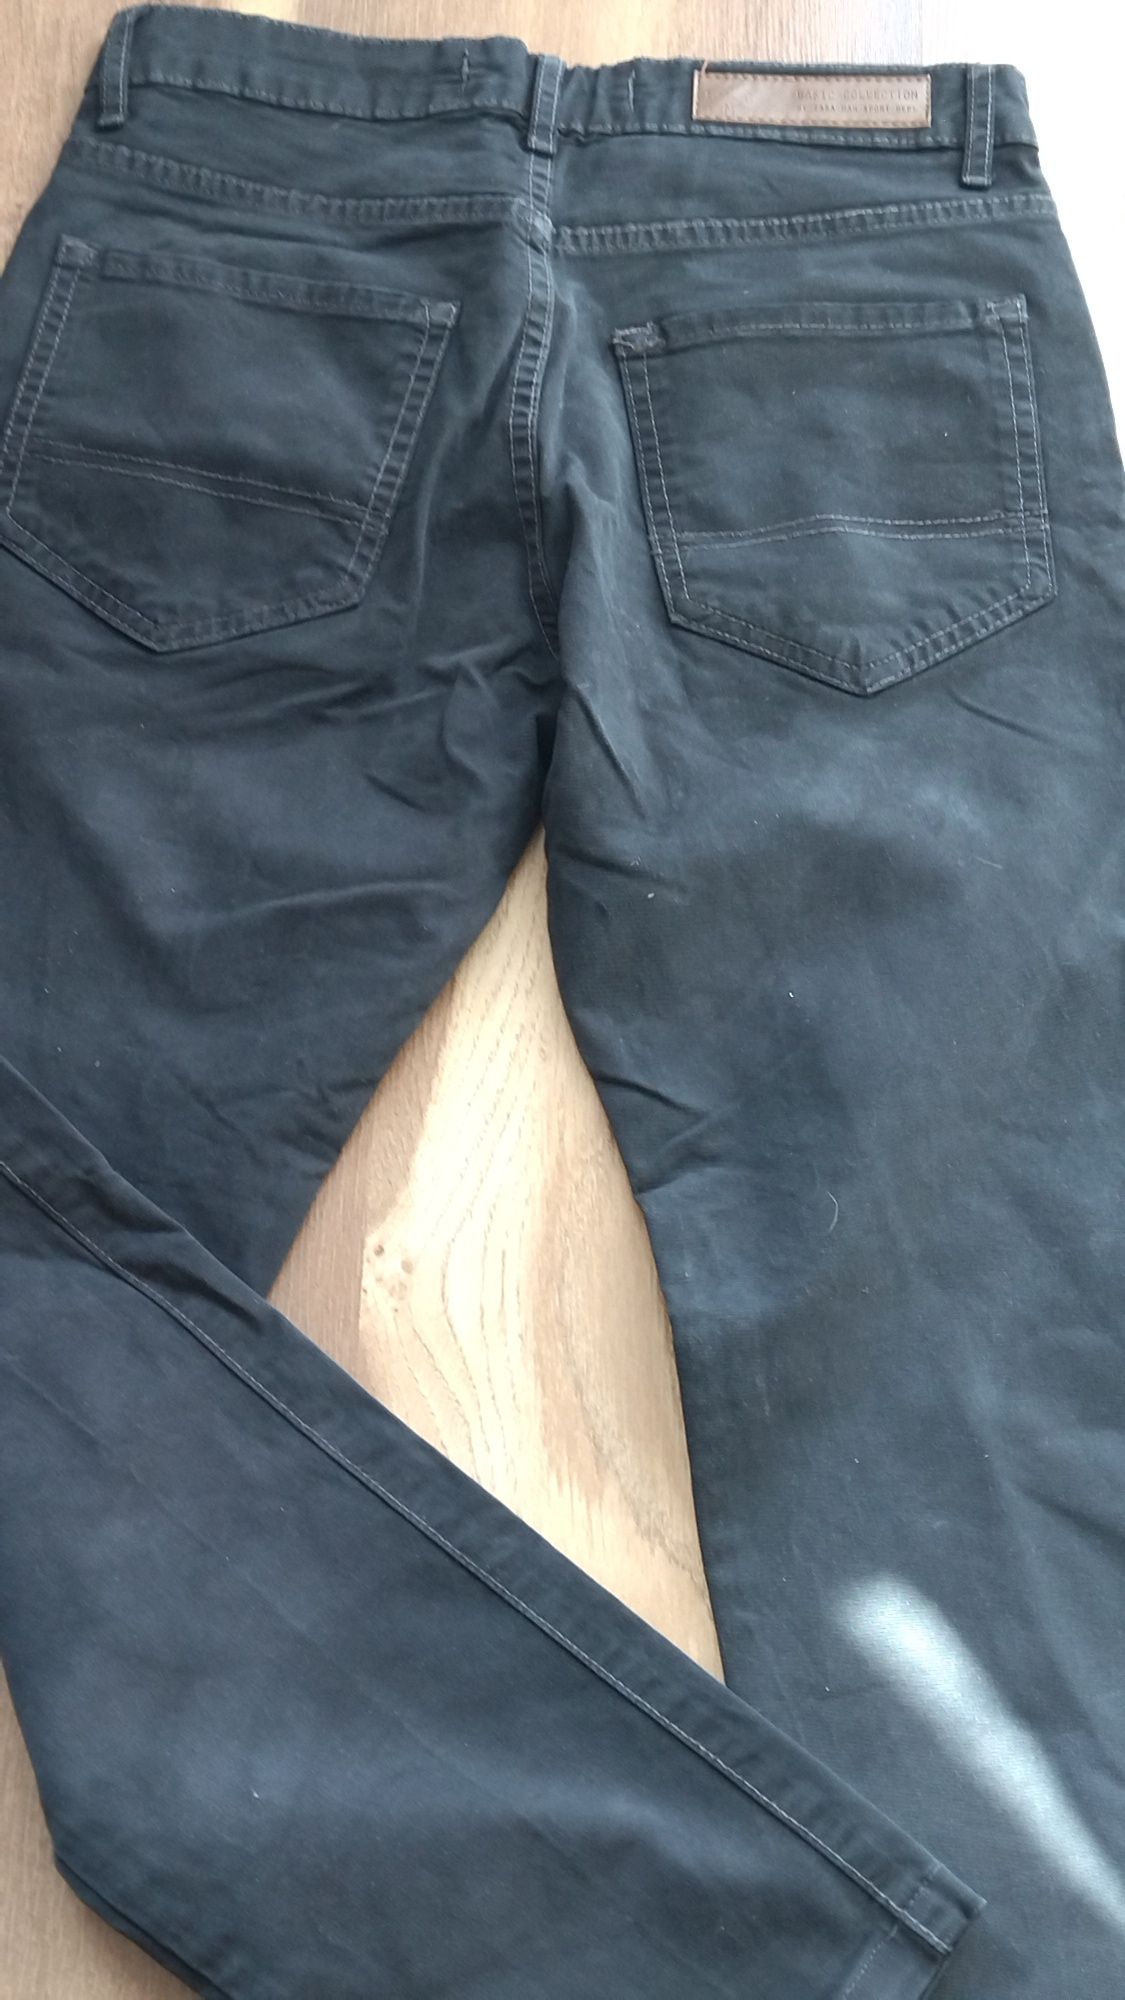 Spodnie jeansowe męskie firmy ZARA na niedużego pana